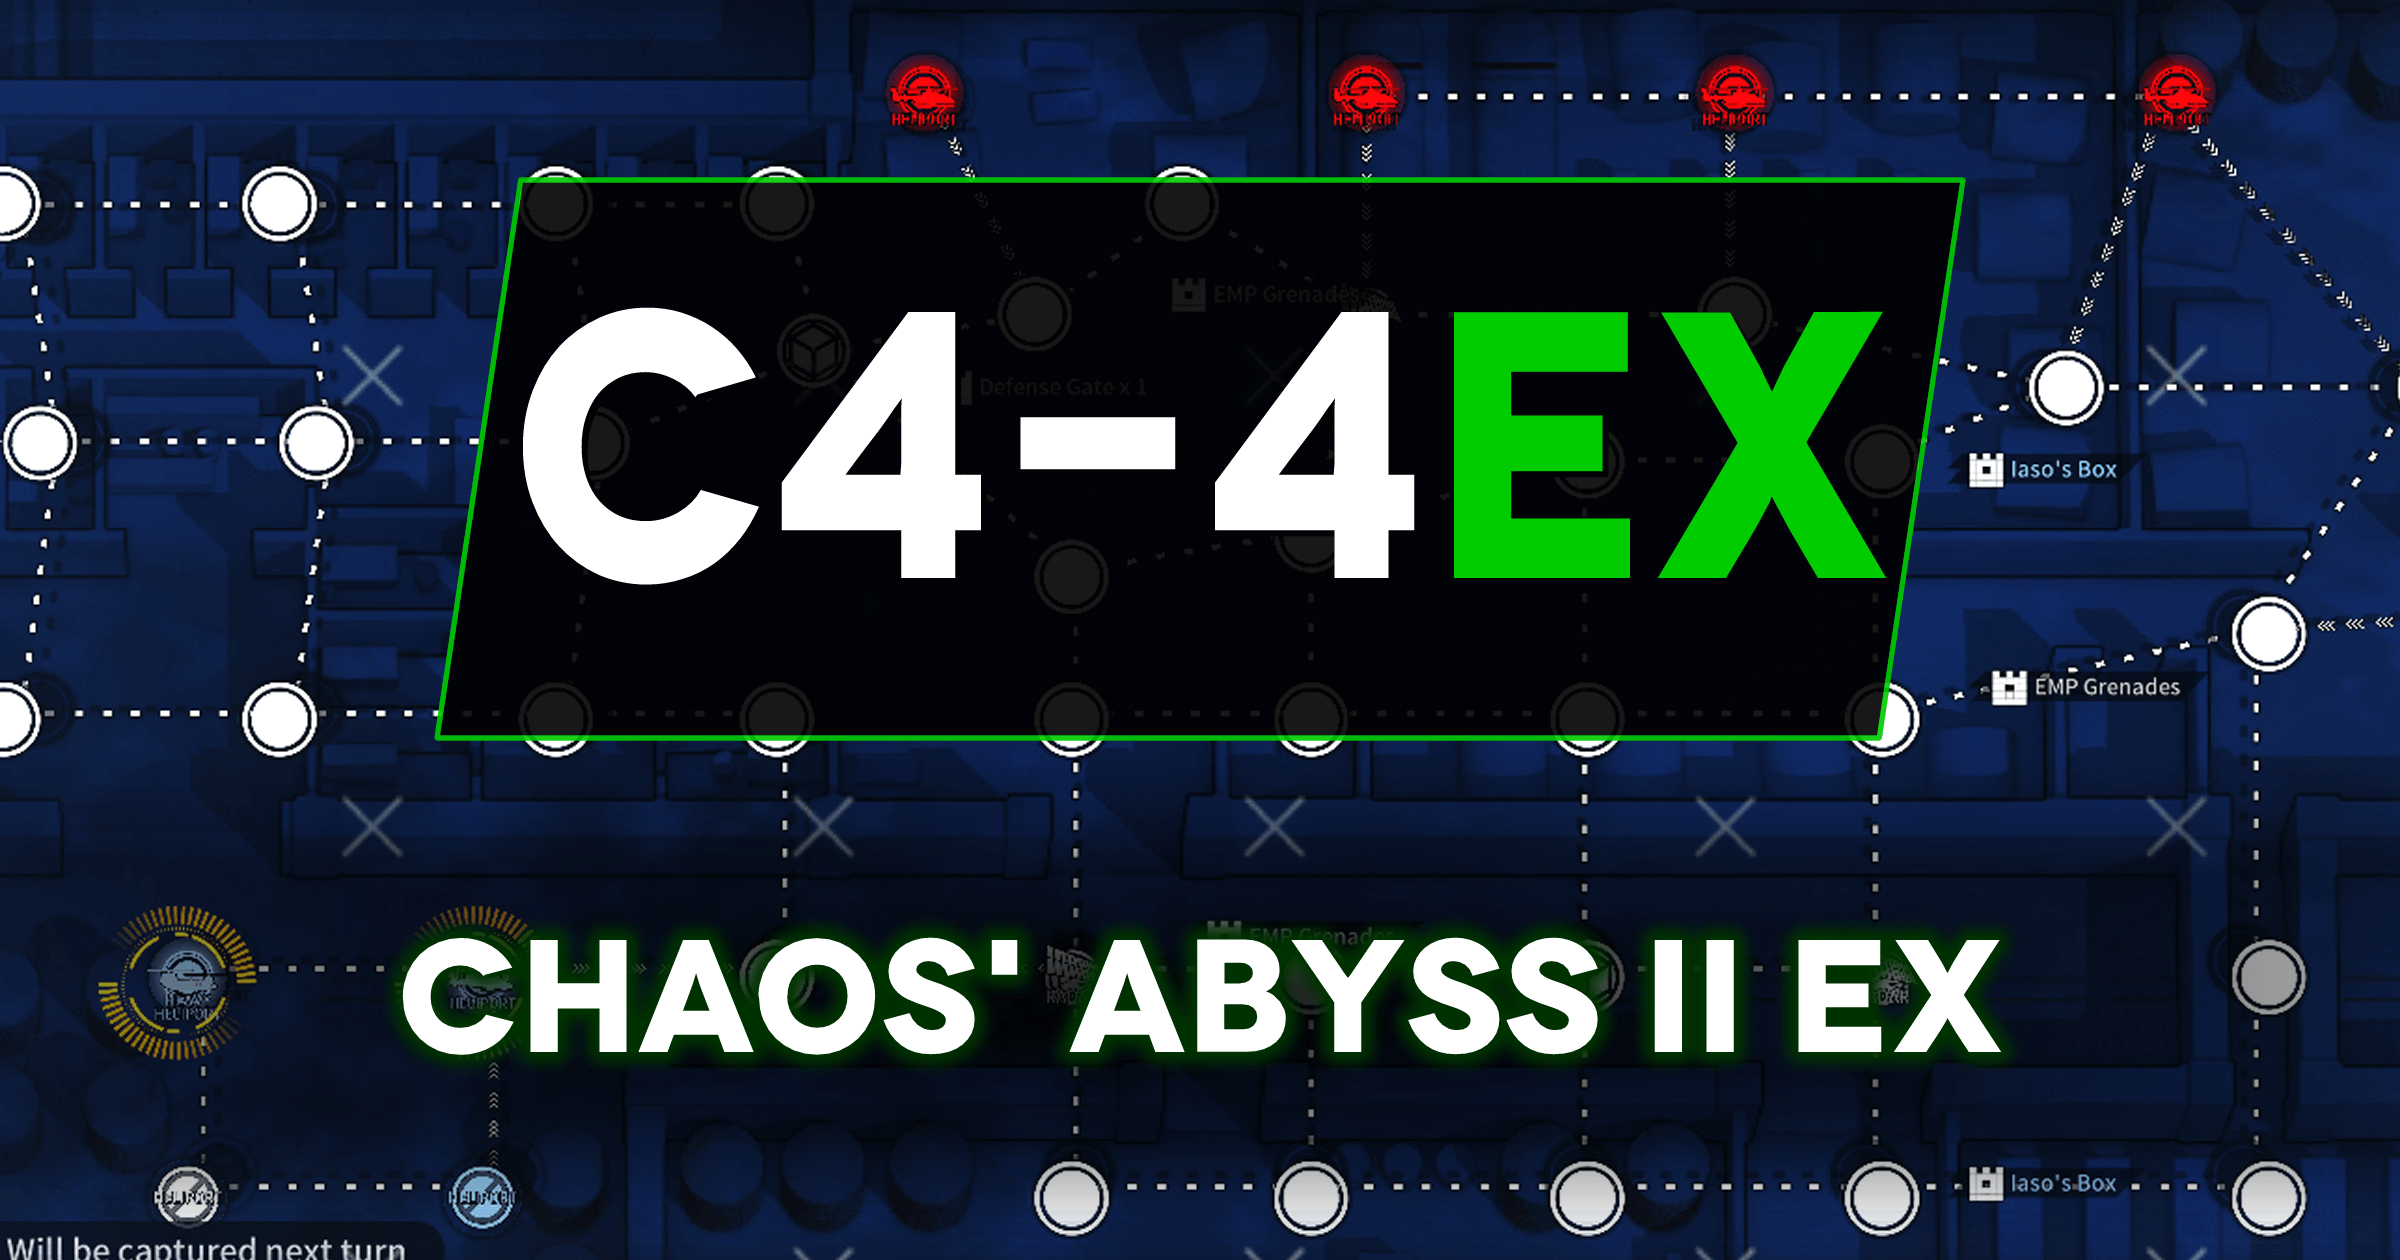 C4-4 EX MS